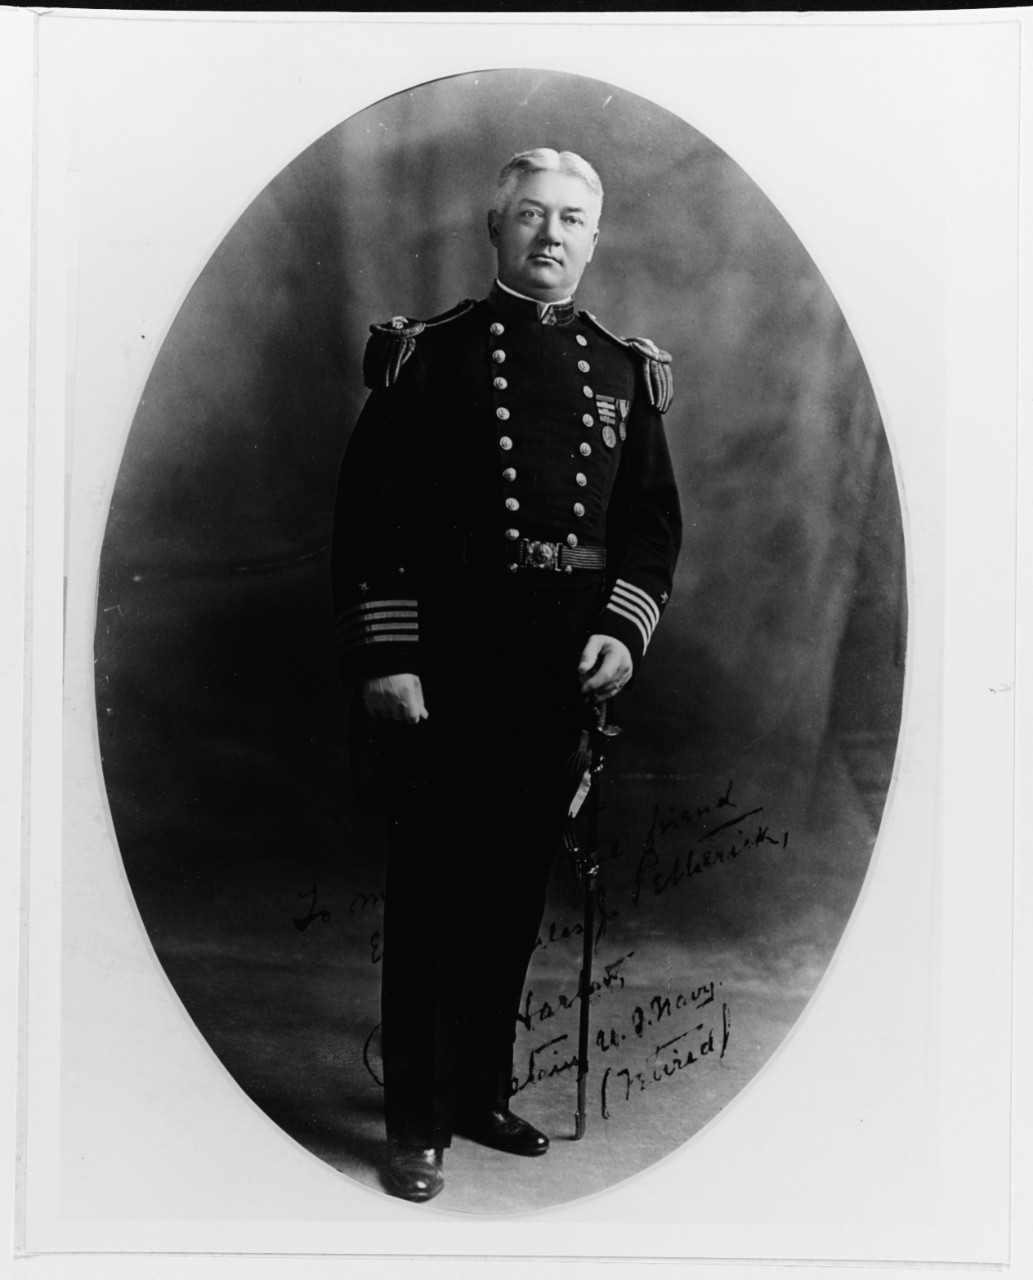 Captain Charles Henry Harlow, USN